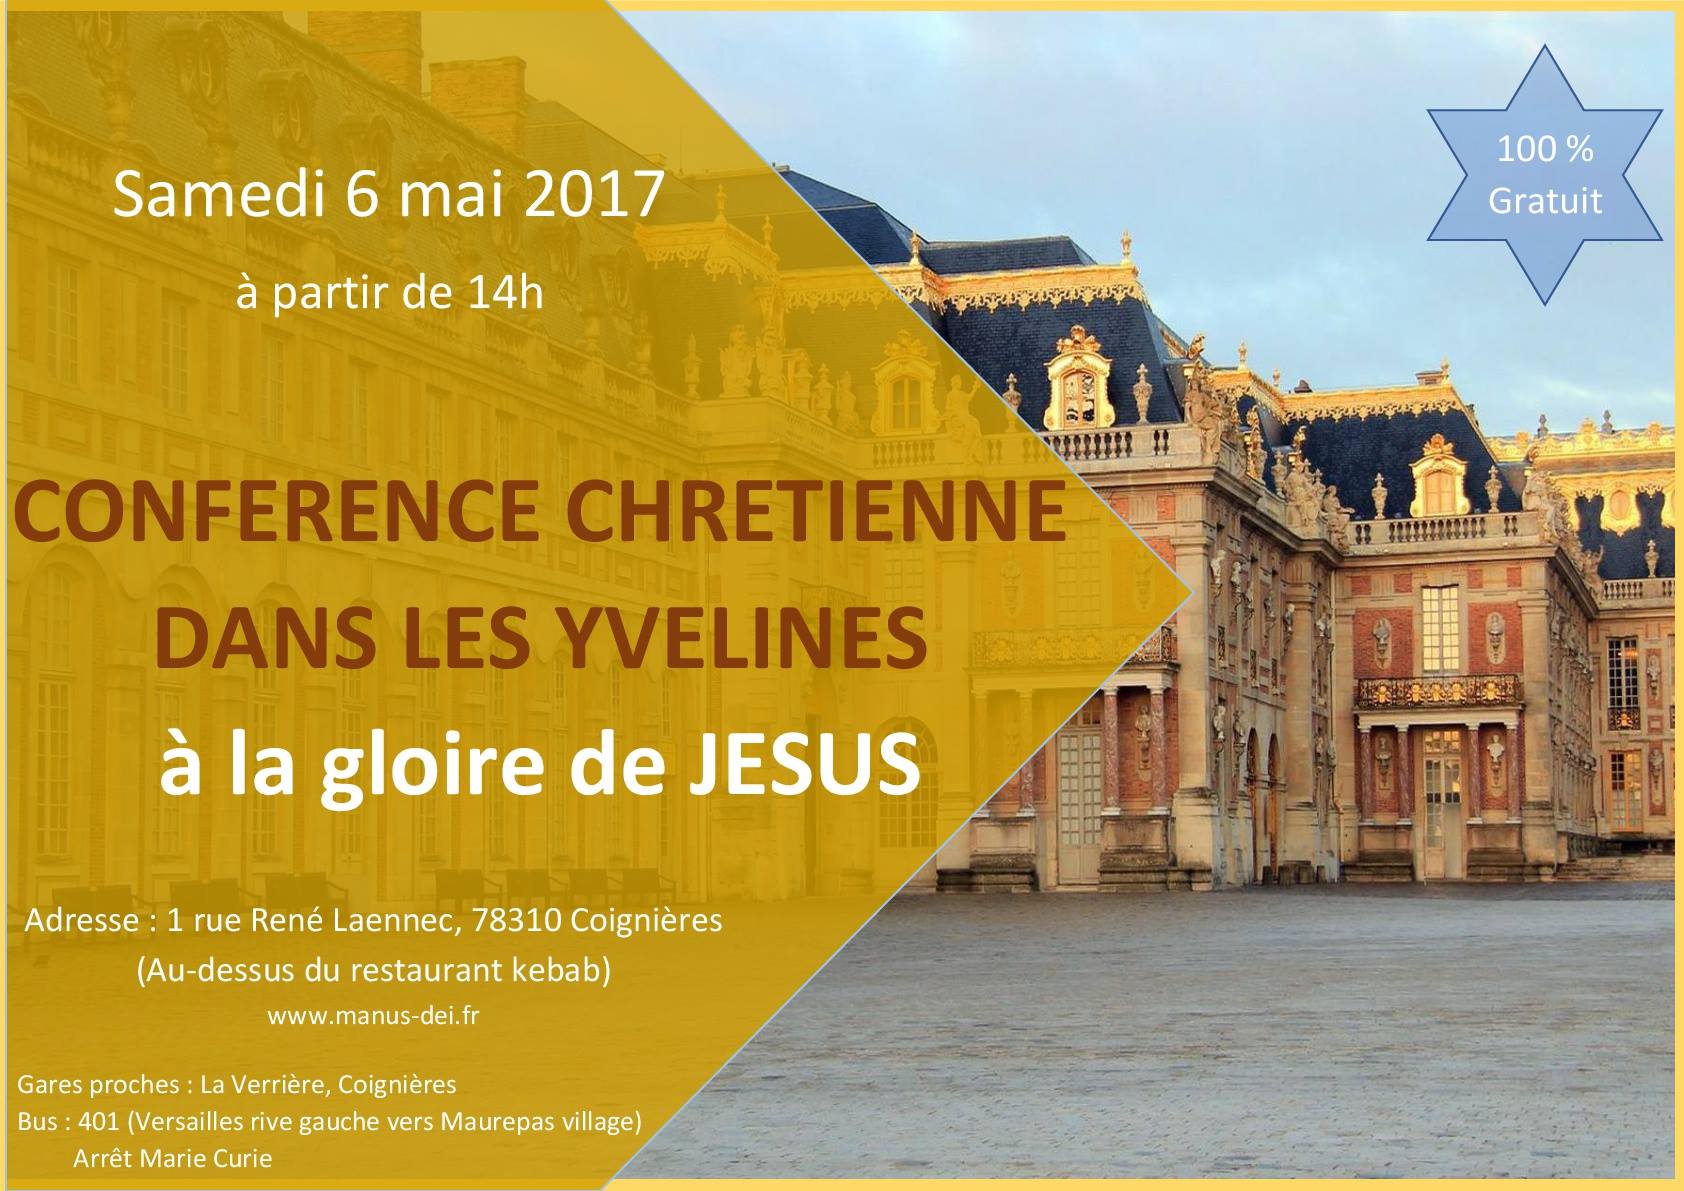 conférence chrétienne dans les Yvelines